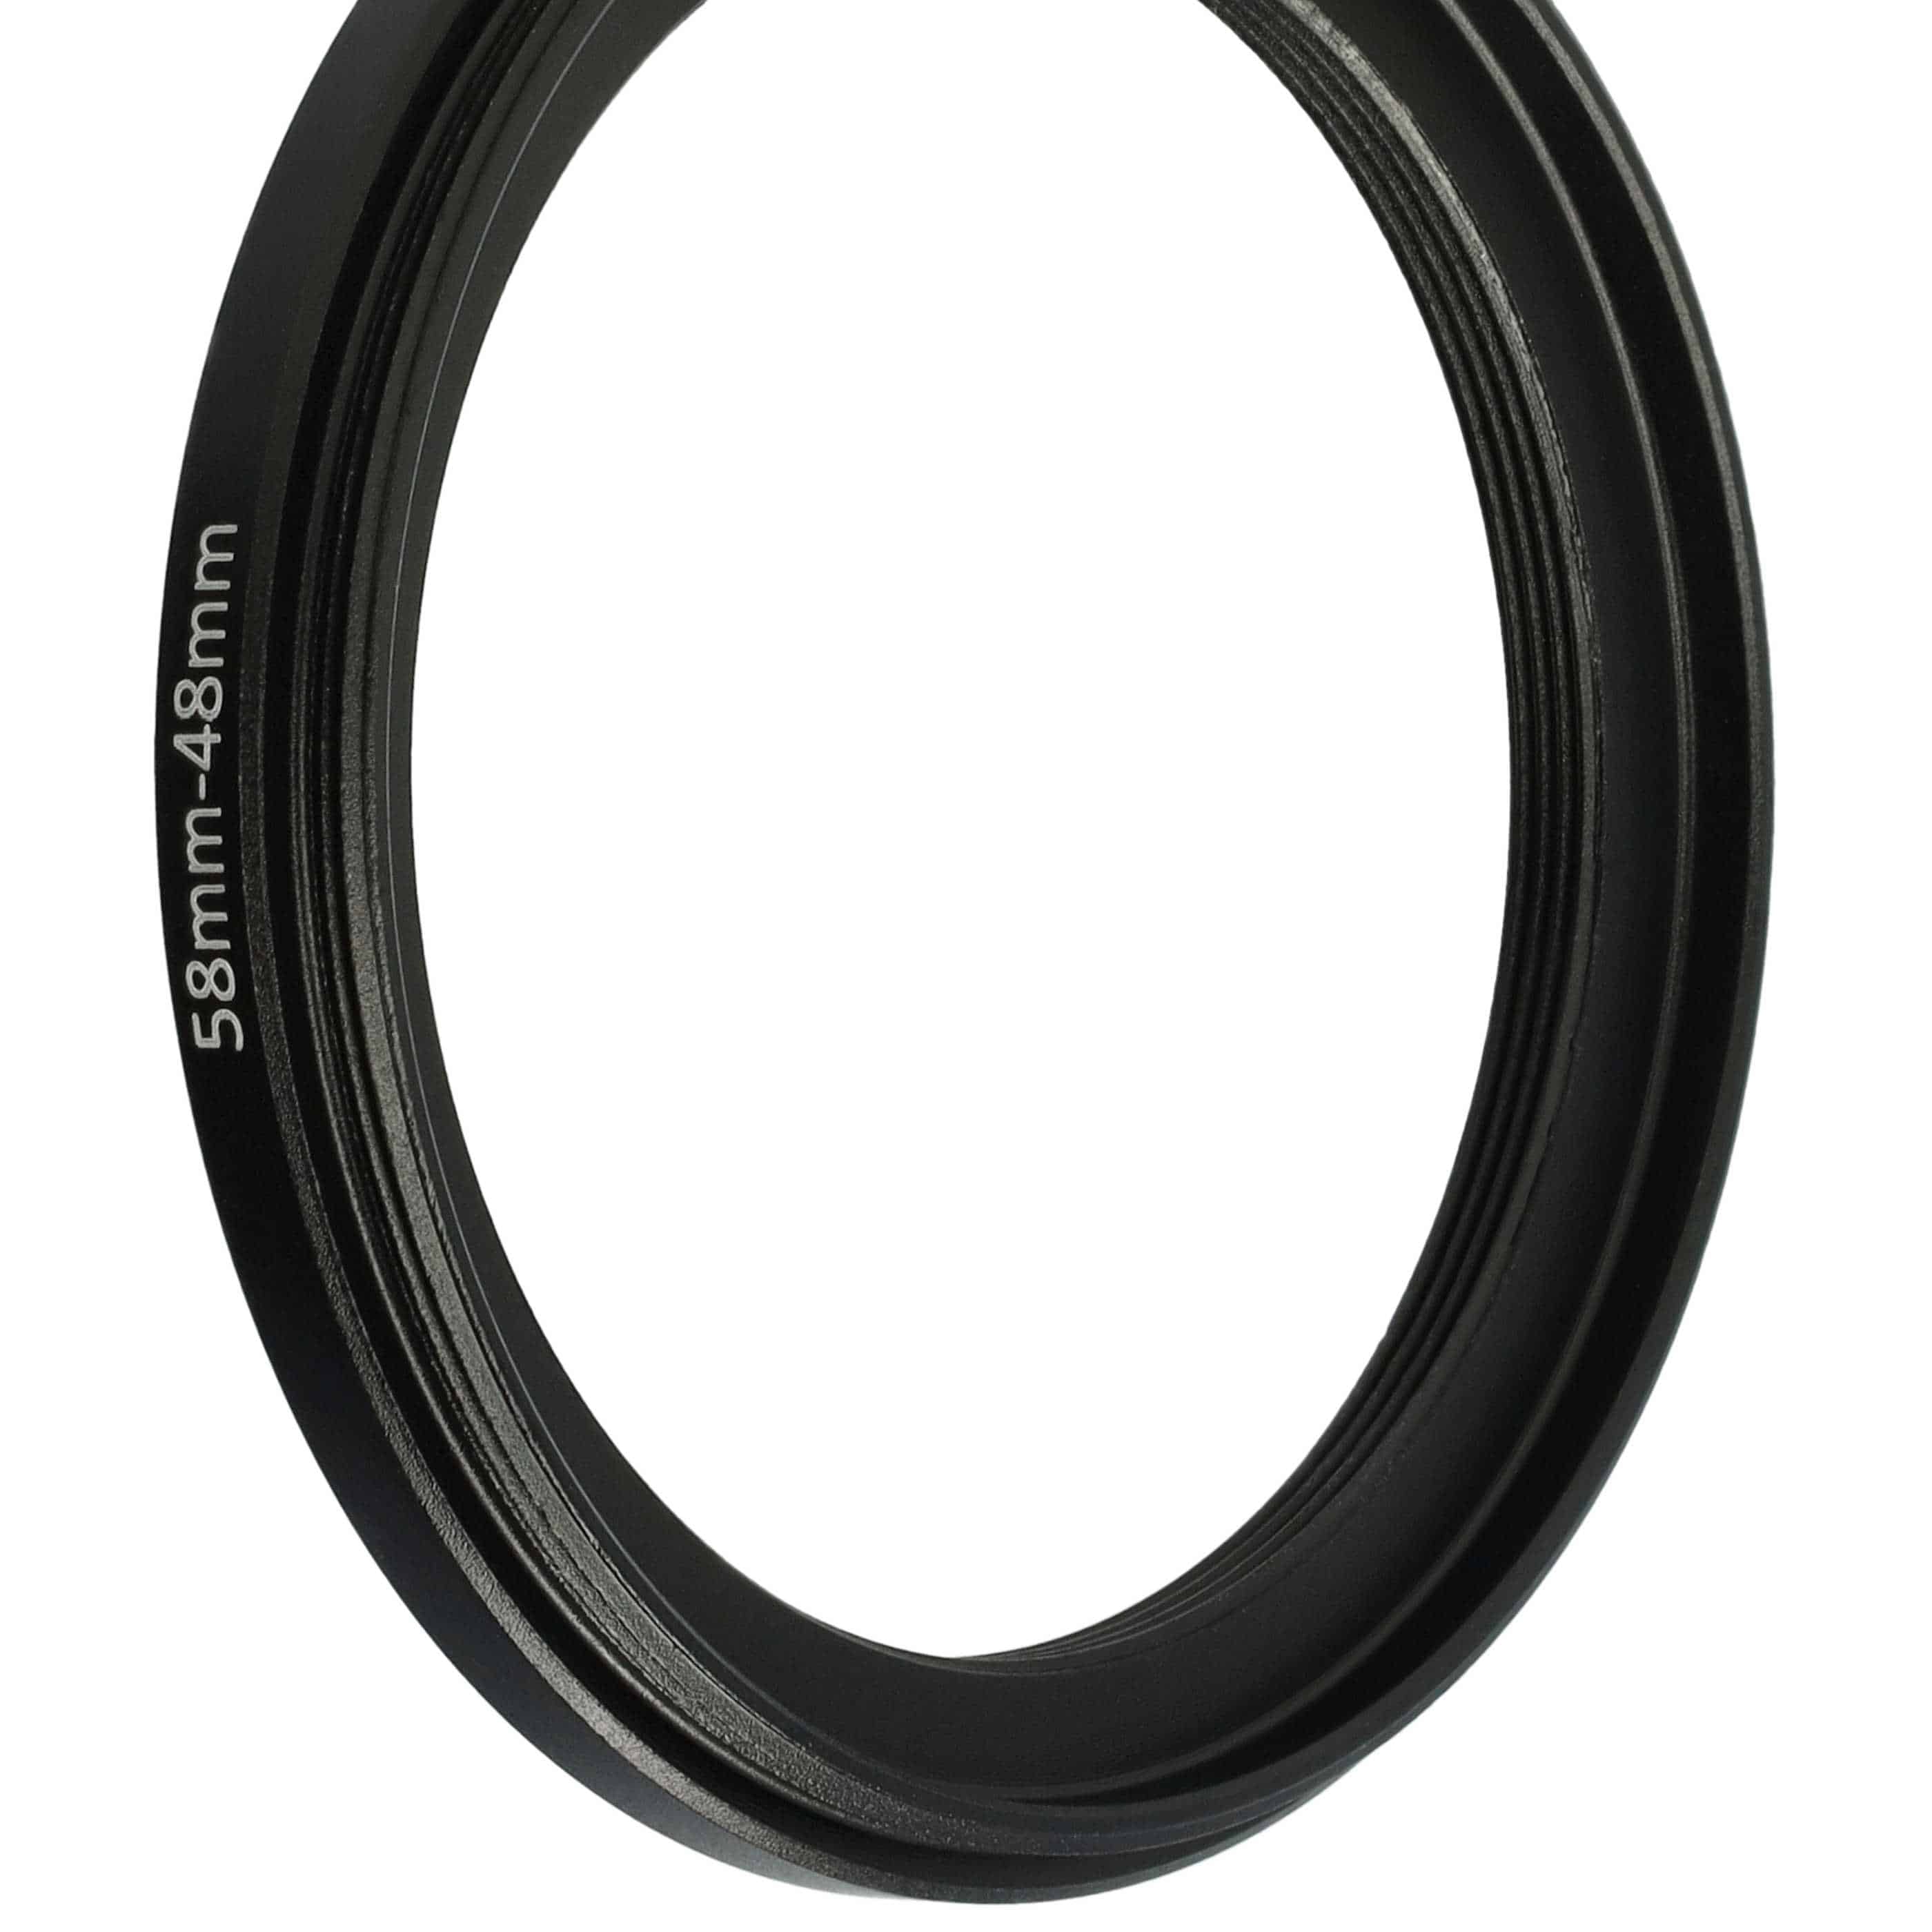 Step-Down-Ring Adapter von 58 mm auf 48 mm passend für Kamera Objektiv - Filteradapter, Metall, schwarz